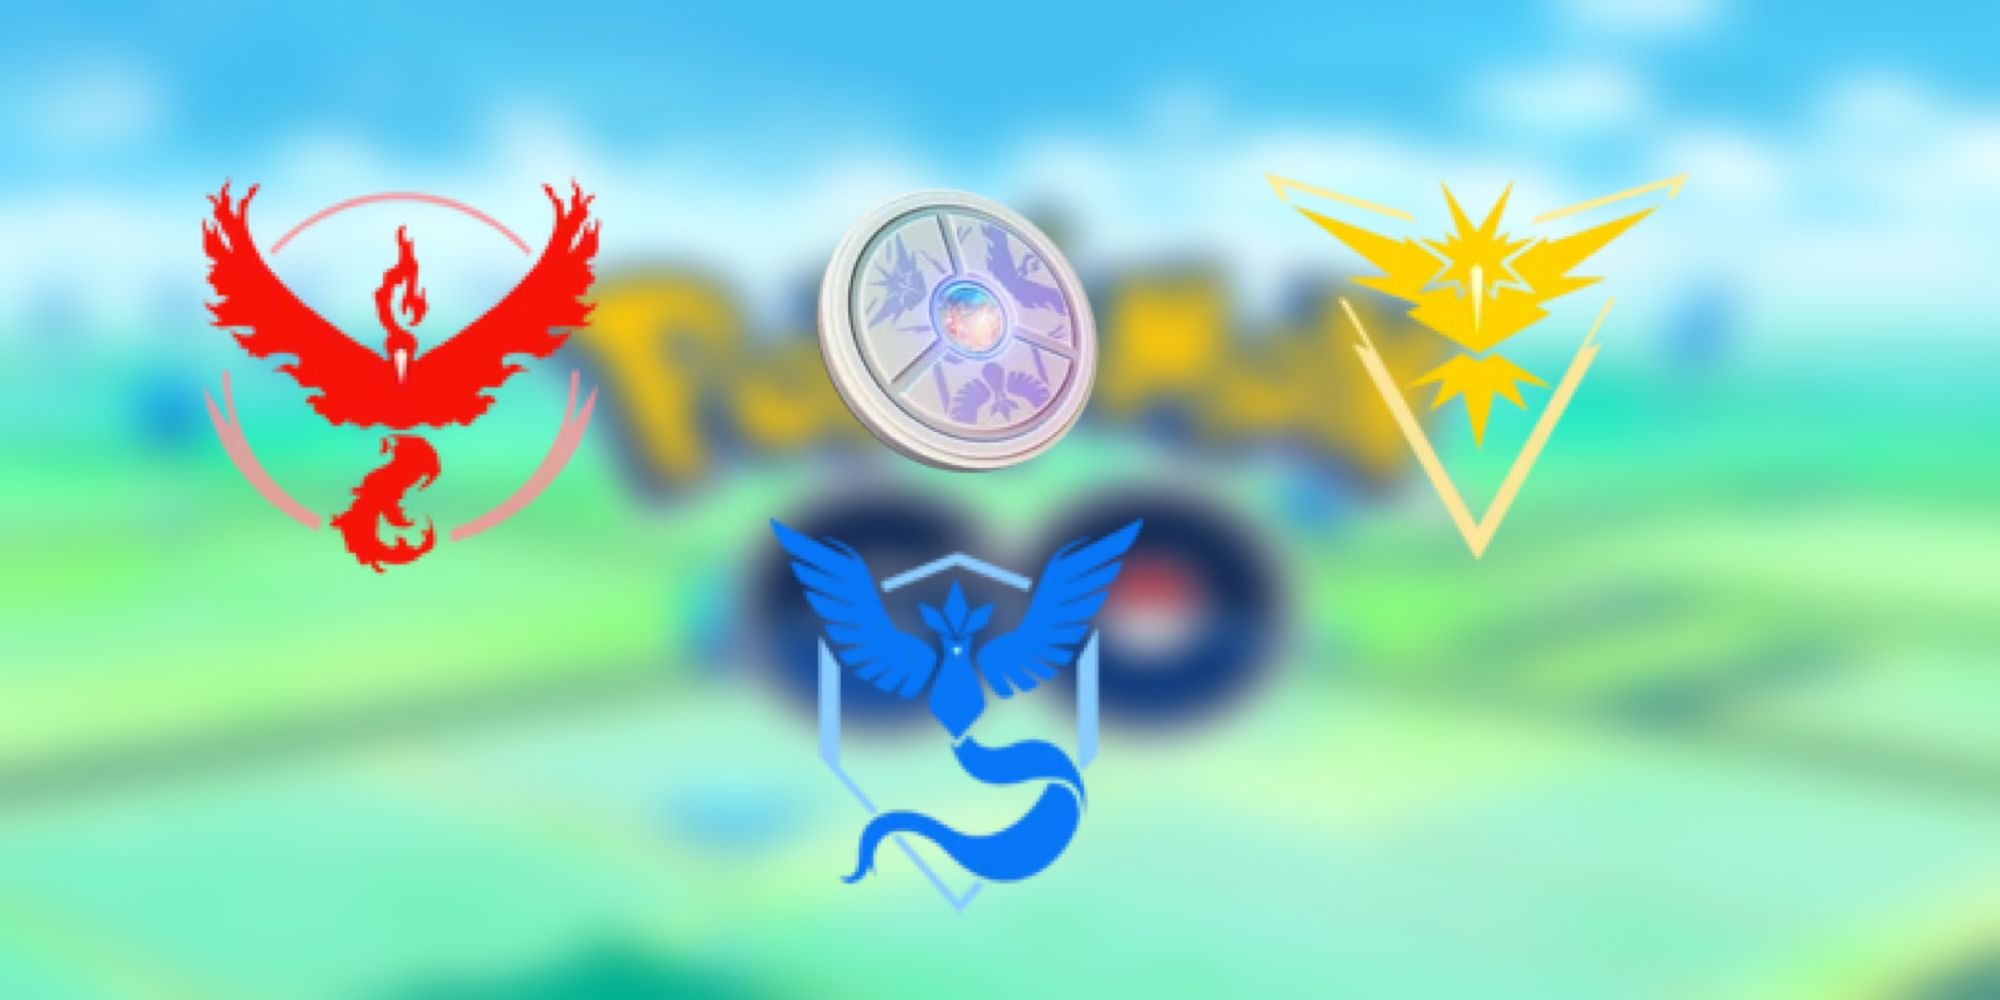 pokemon go logo blurred team valor instinct mystic medallion